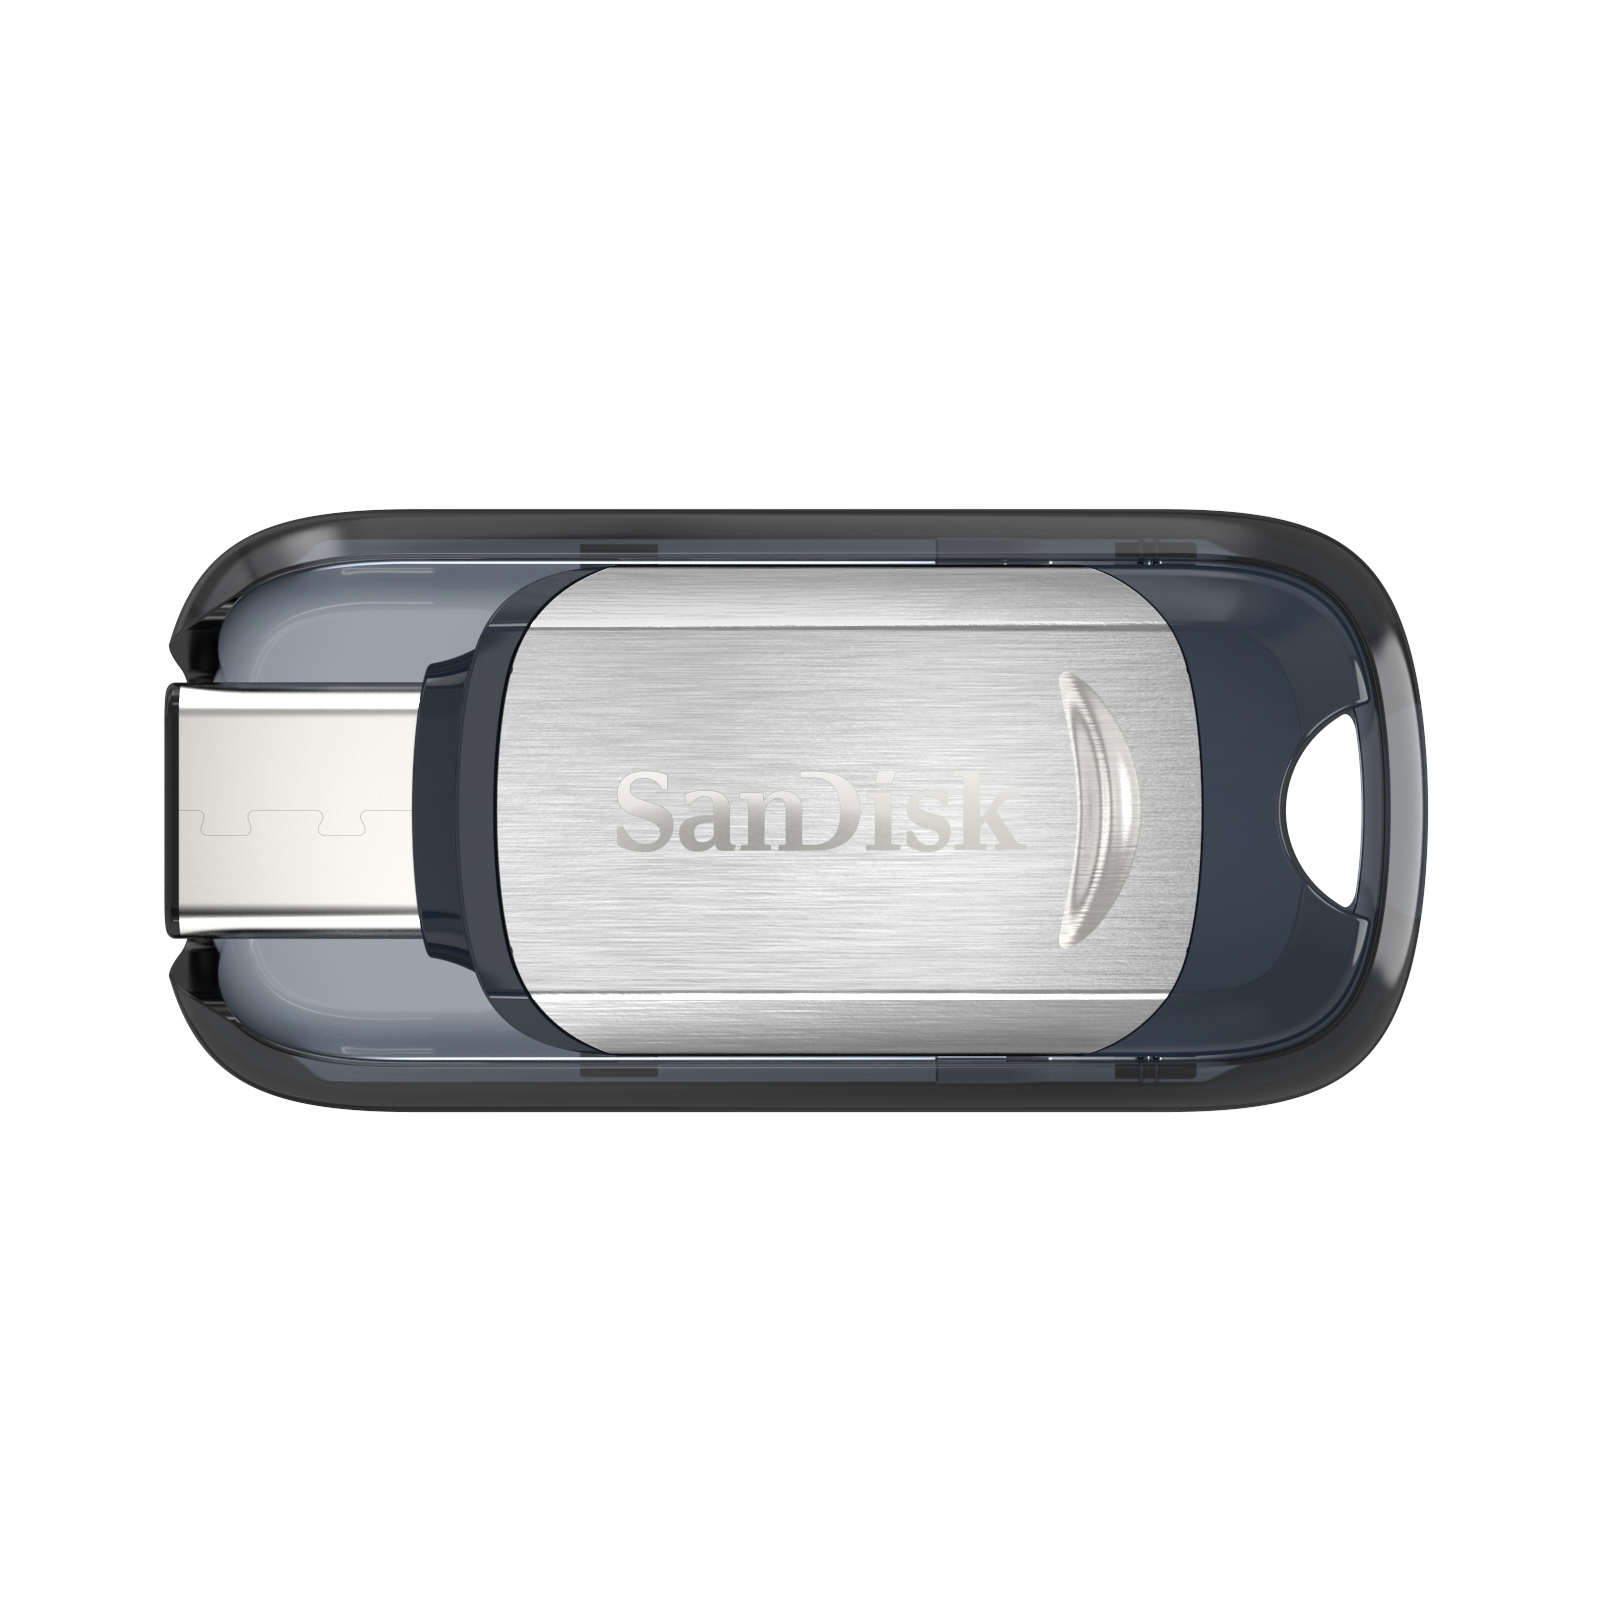 USB флеш накопитель SanDisk 128GB Ultra USB 3.0/Type-C (SDCZ450-128G-G46)